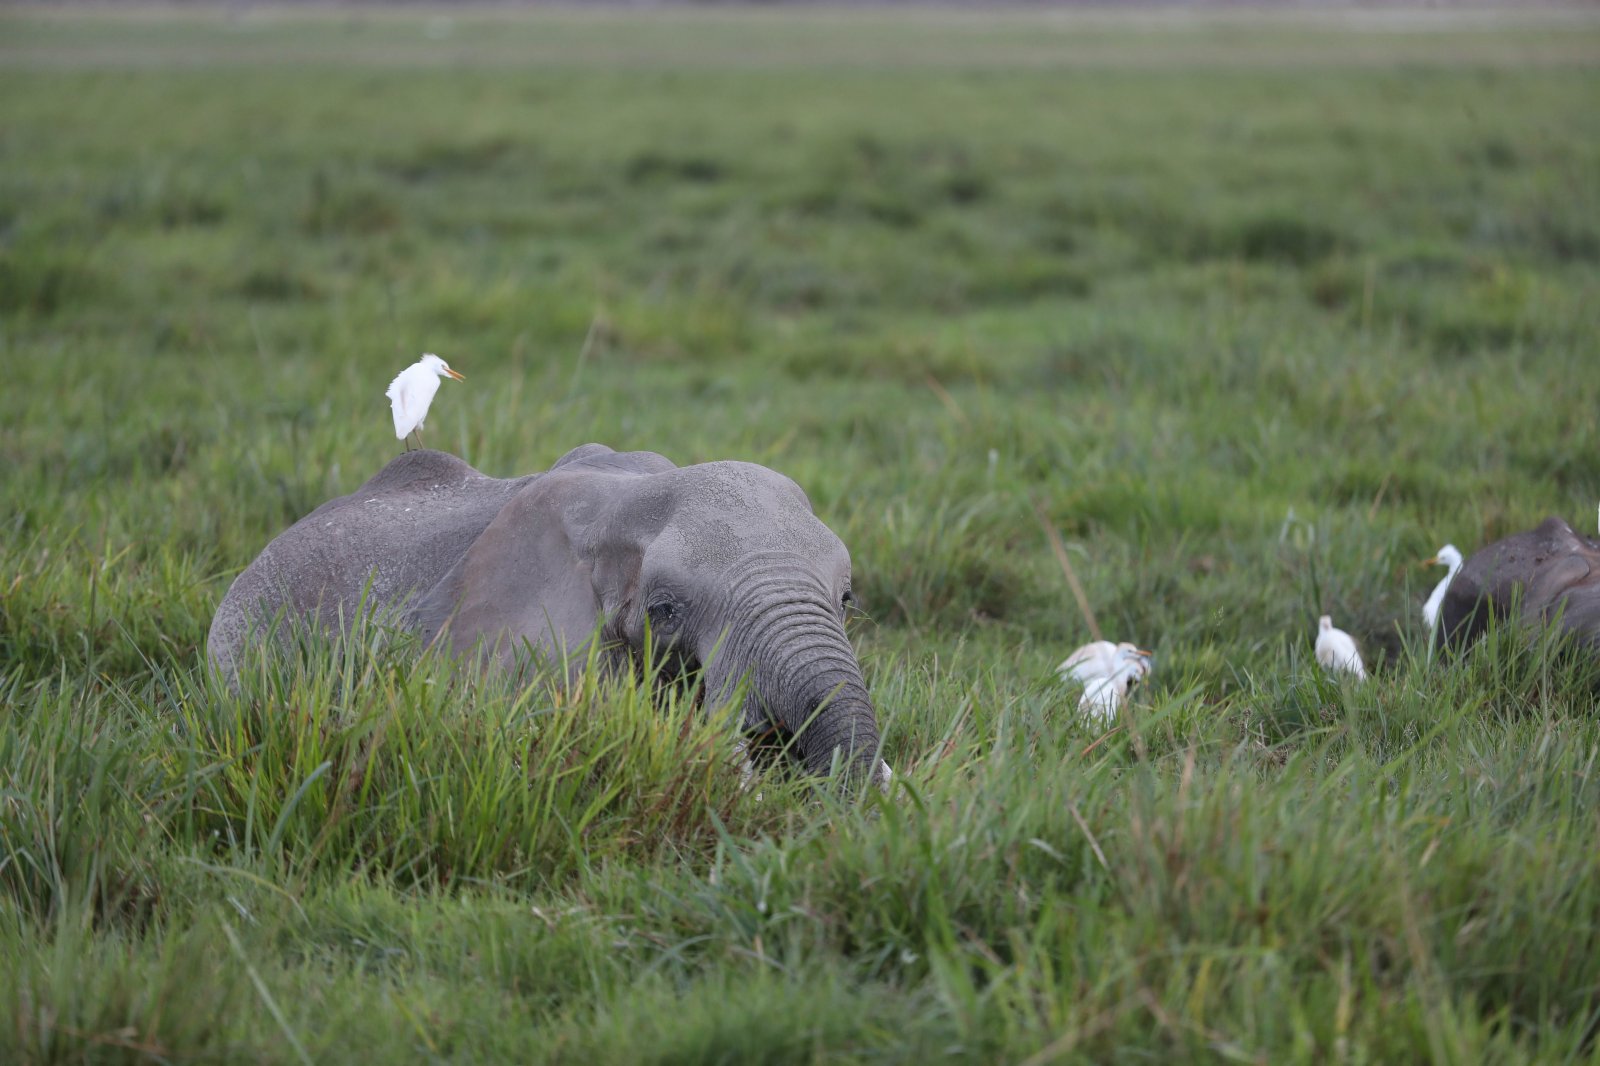 這是6月11日在肯尼亚安博塞利國家公園拍攝的大象。